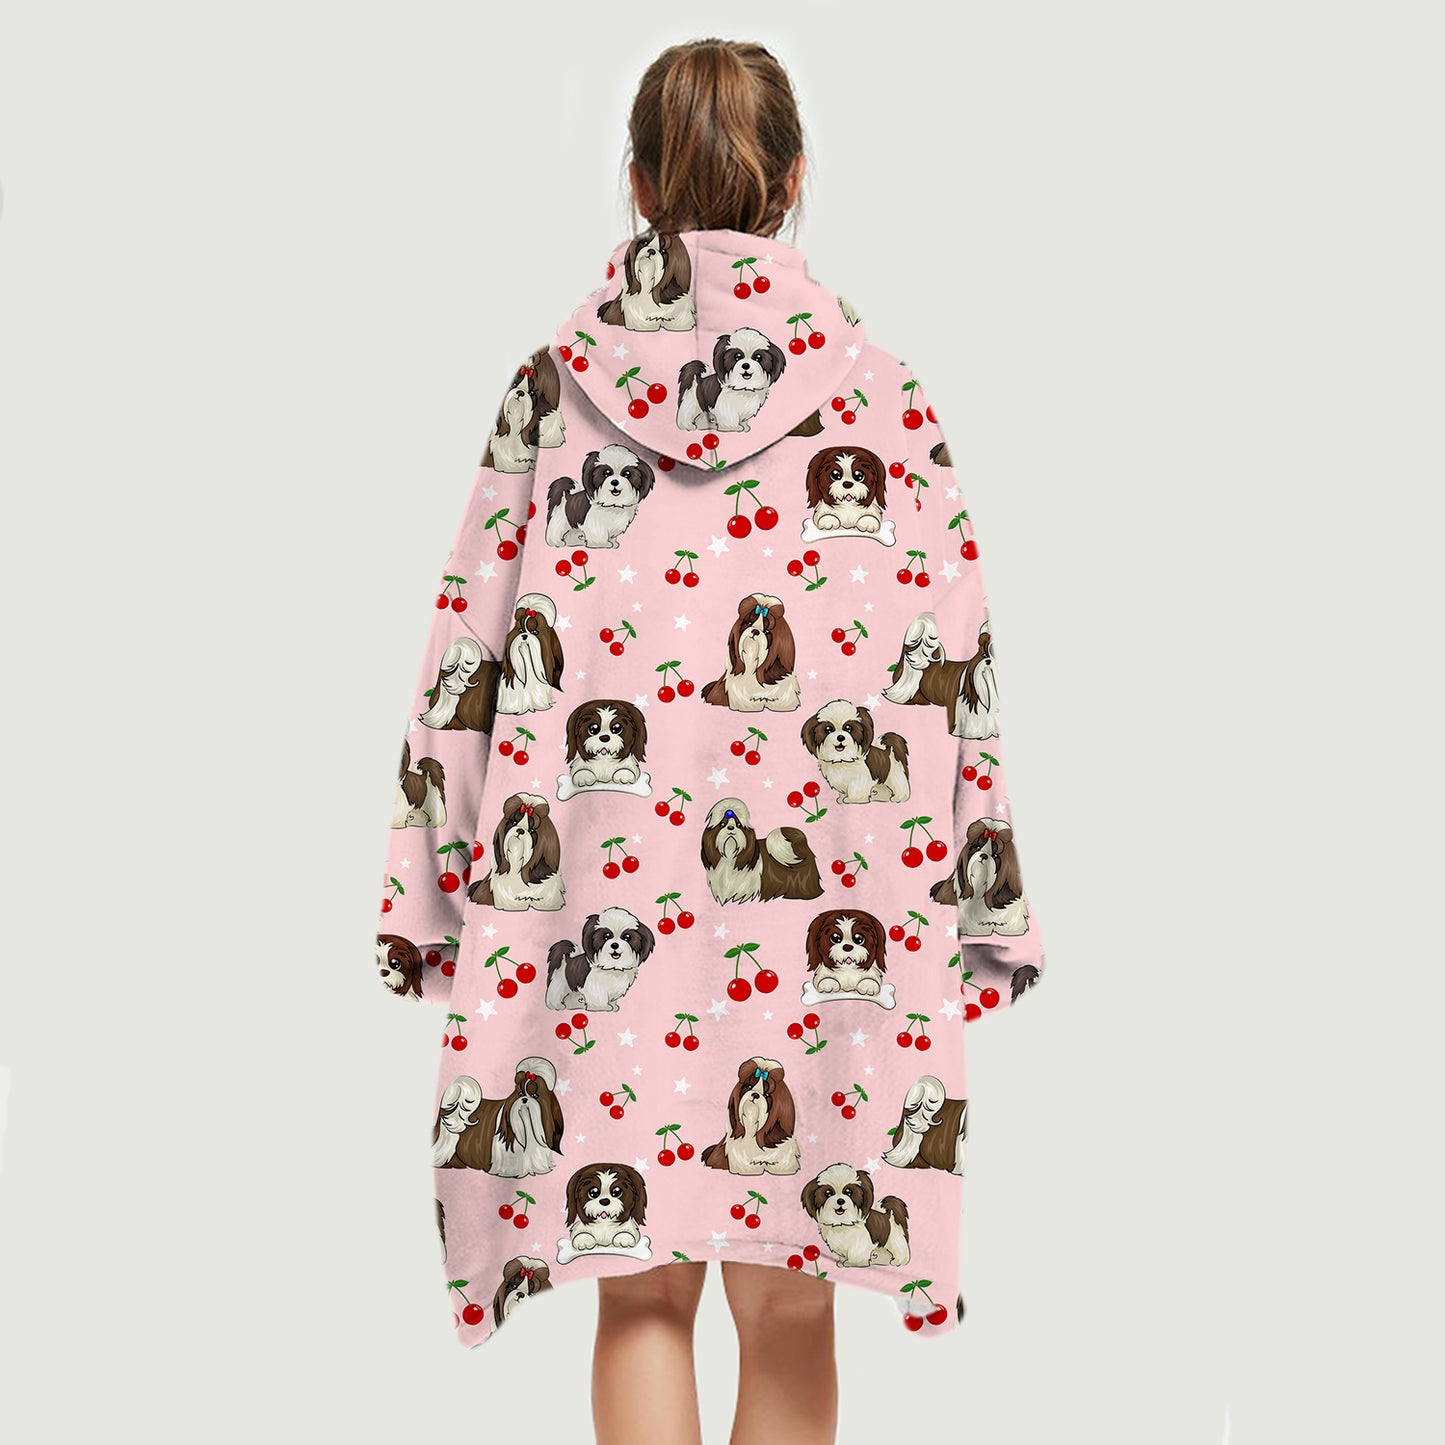 I Love Cherries - Shih Tzu Fleece Blanket Hoodie